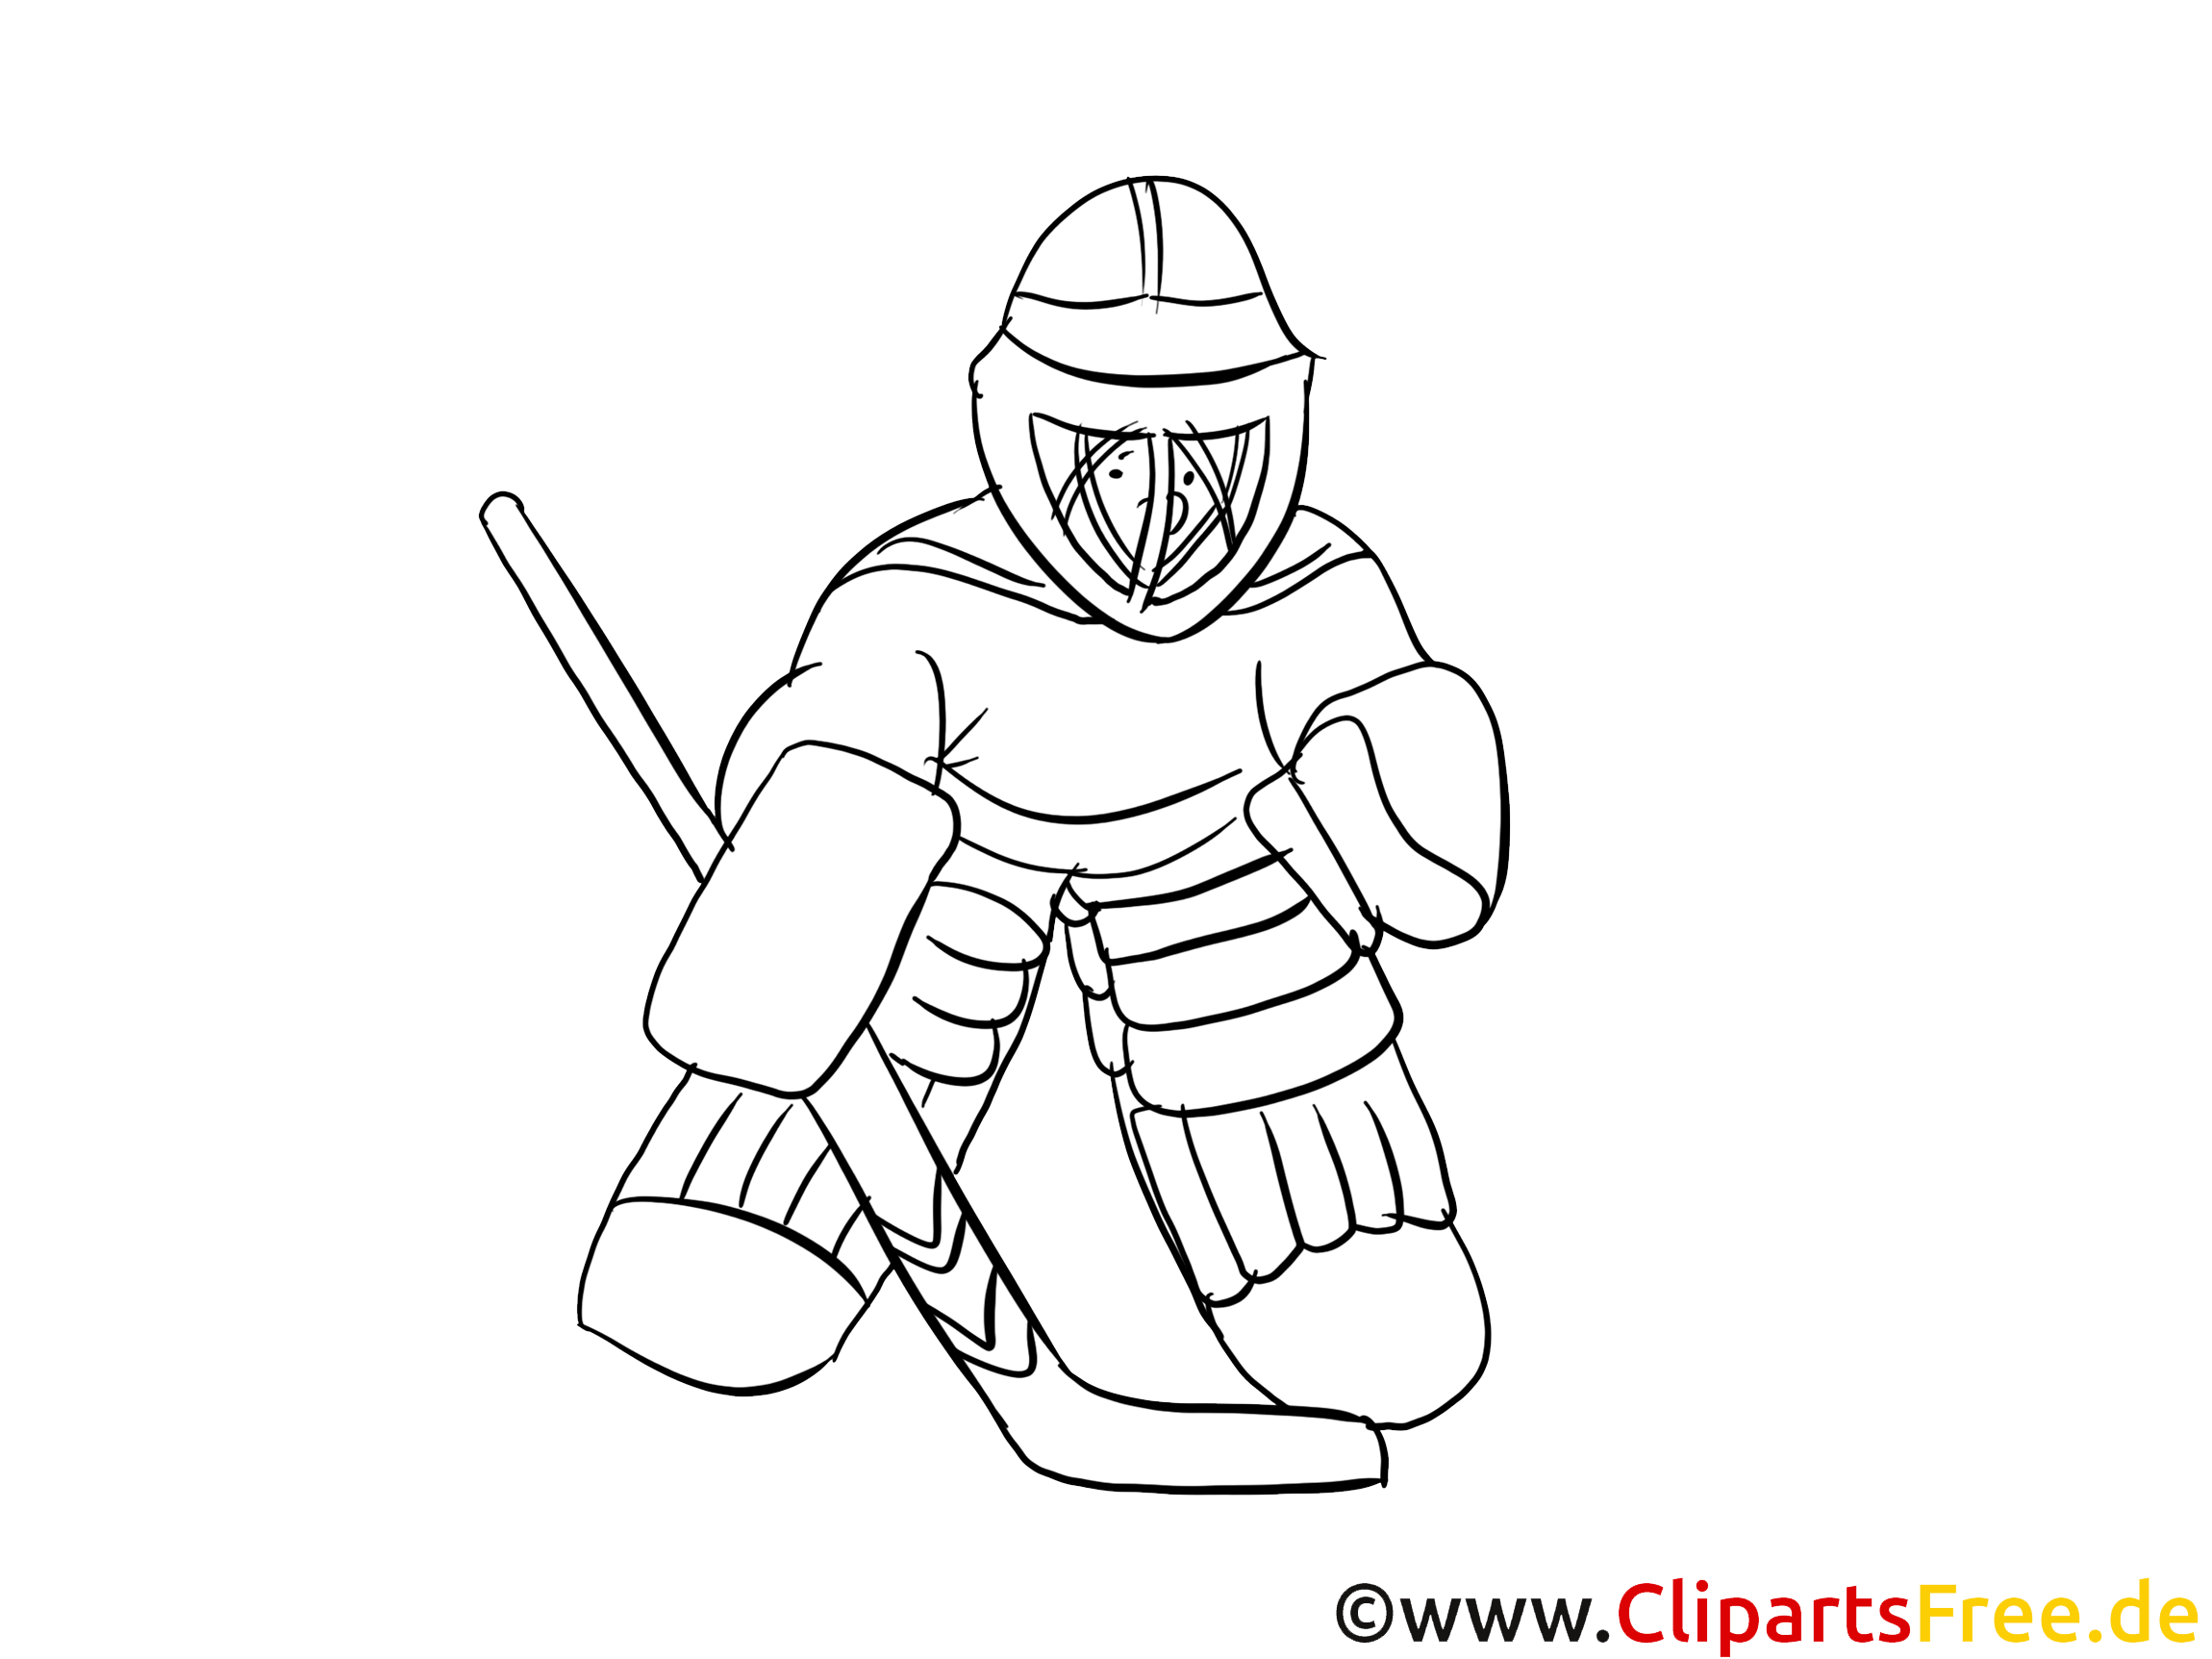 Gardien cliparts gratuis – Hockey à imprimer